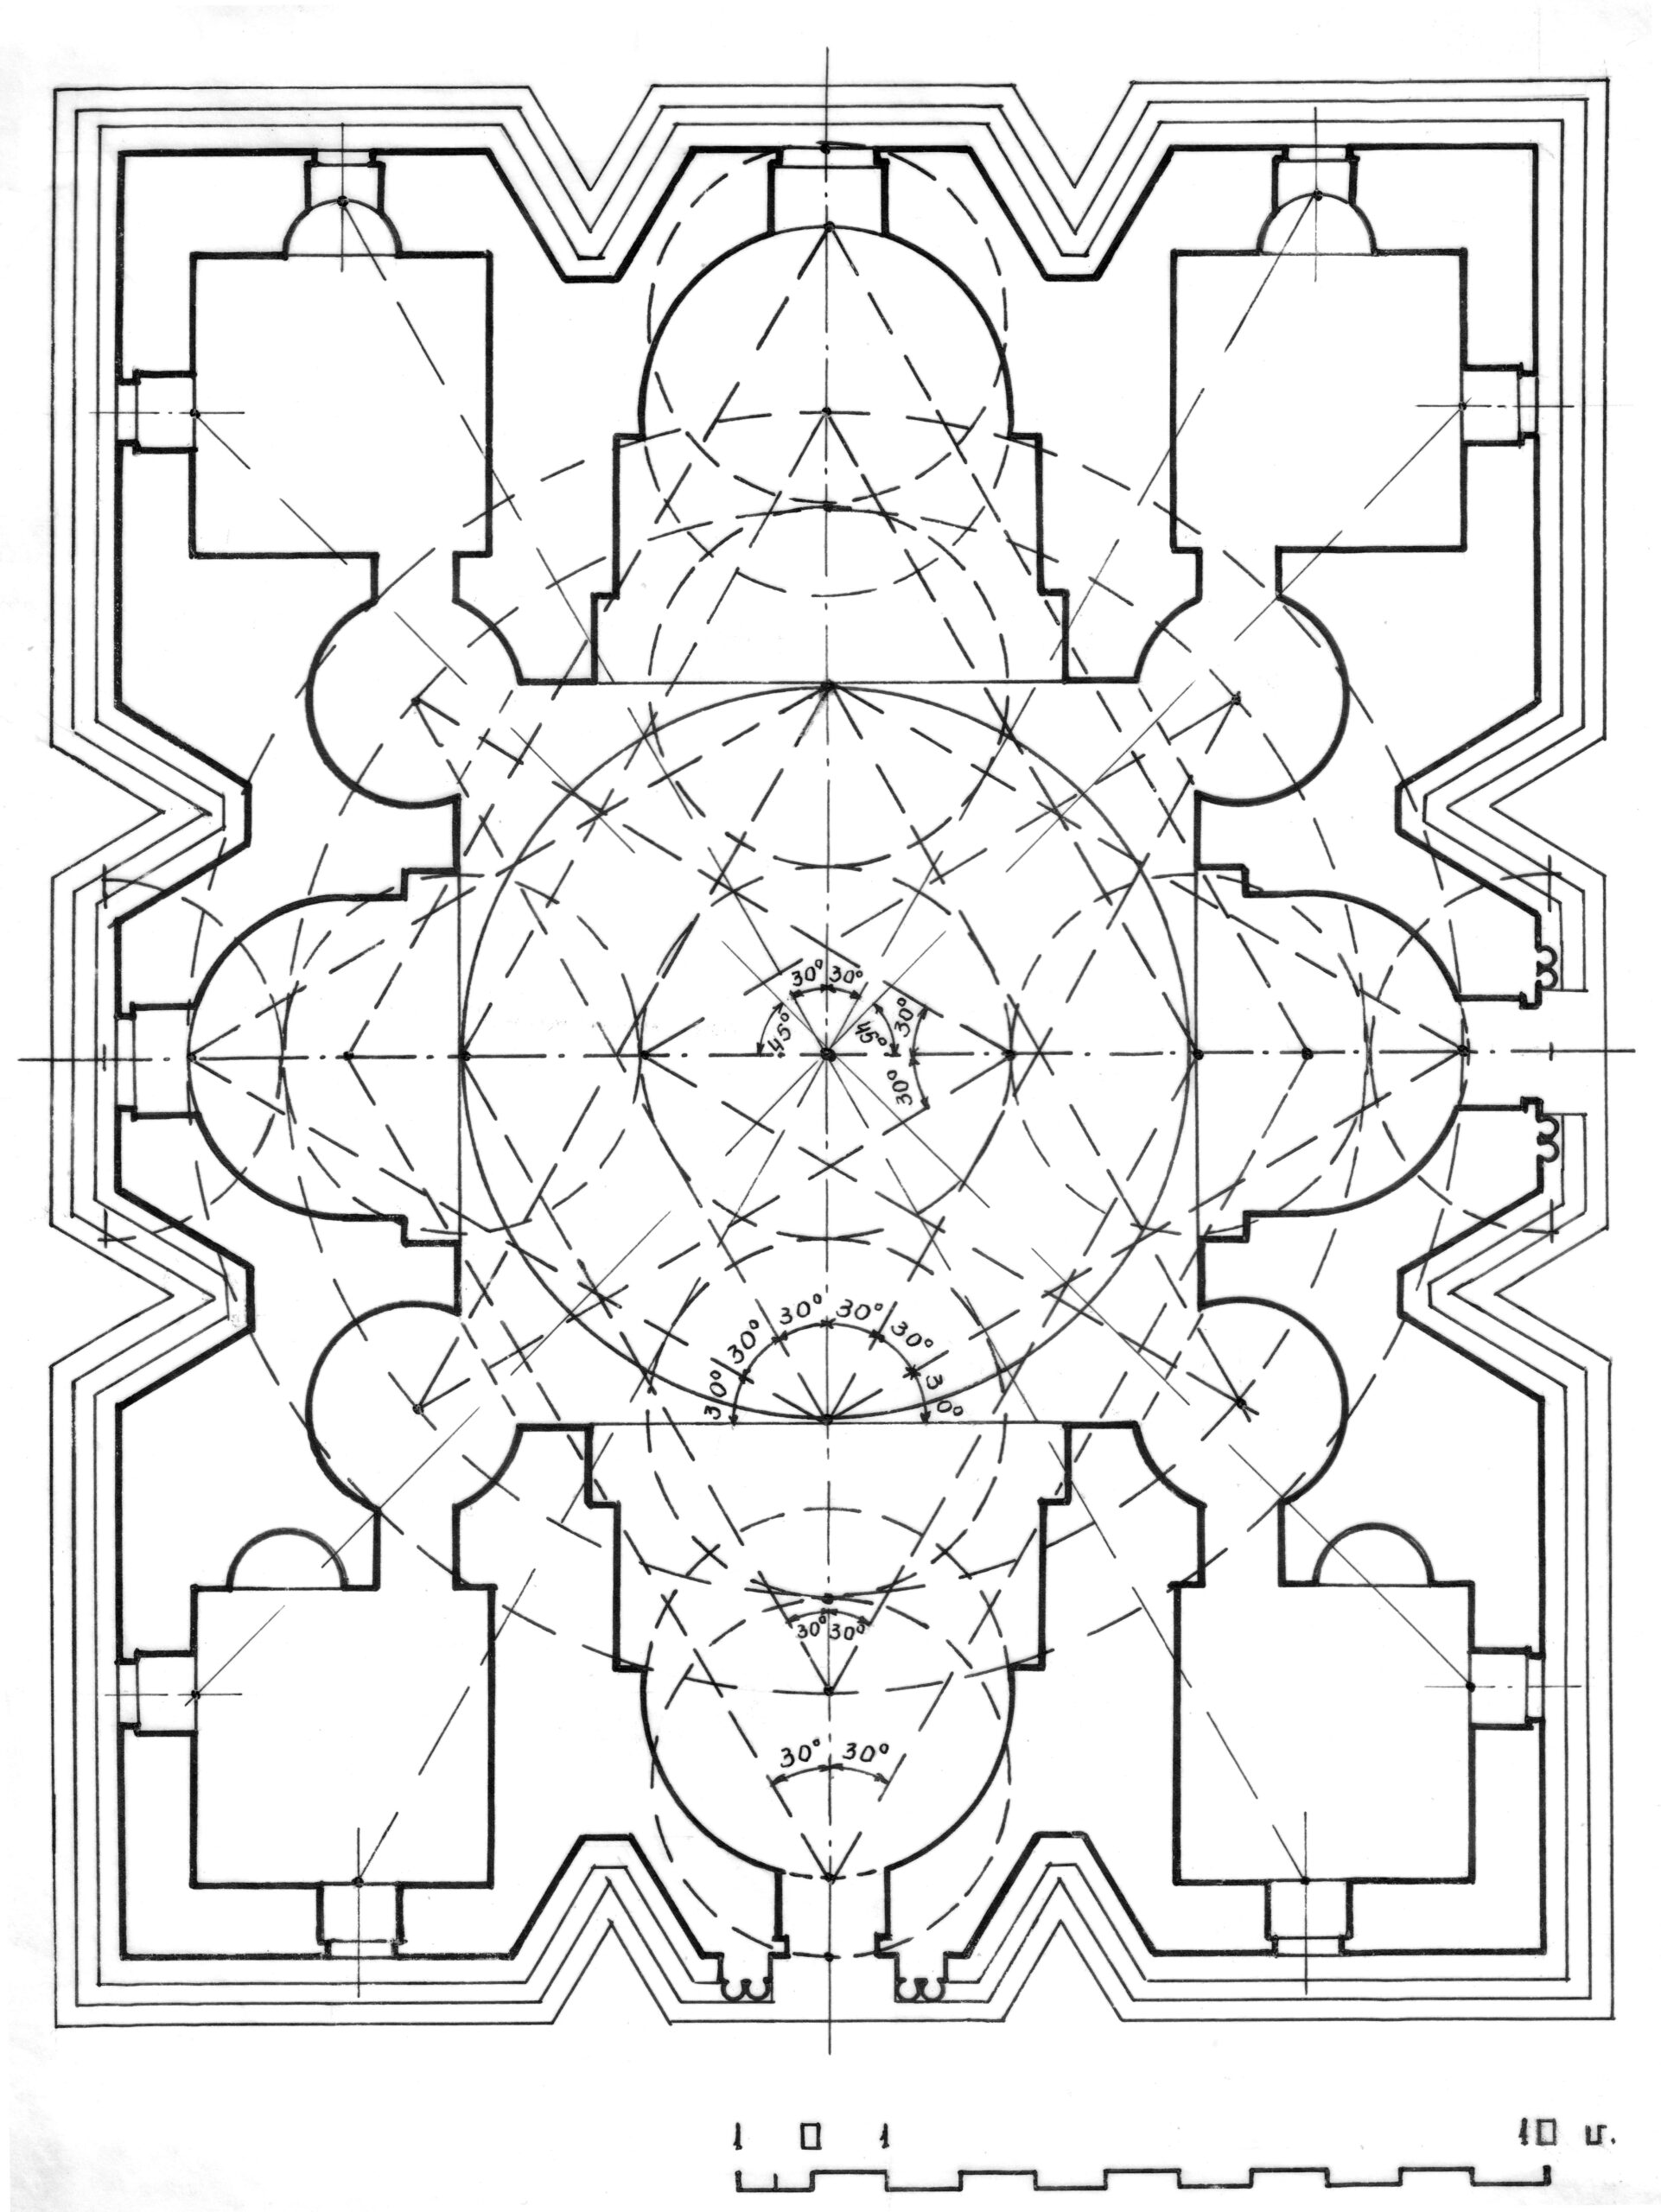 Ավանատիպ տաճարի տիպական հատակագծի ստեղծման կանոնական համակարգը